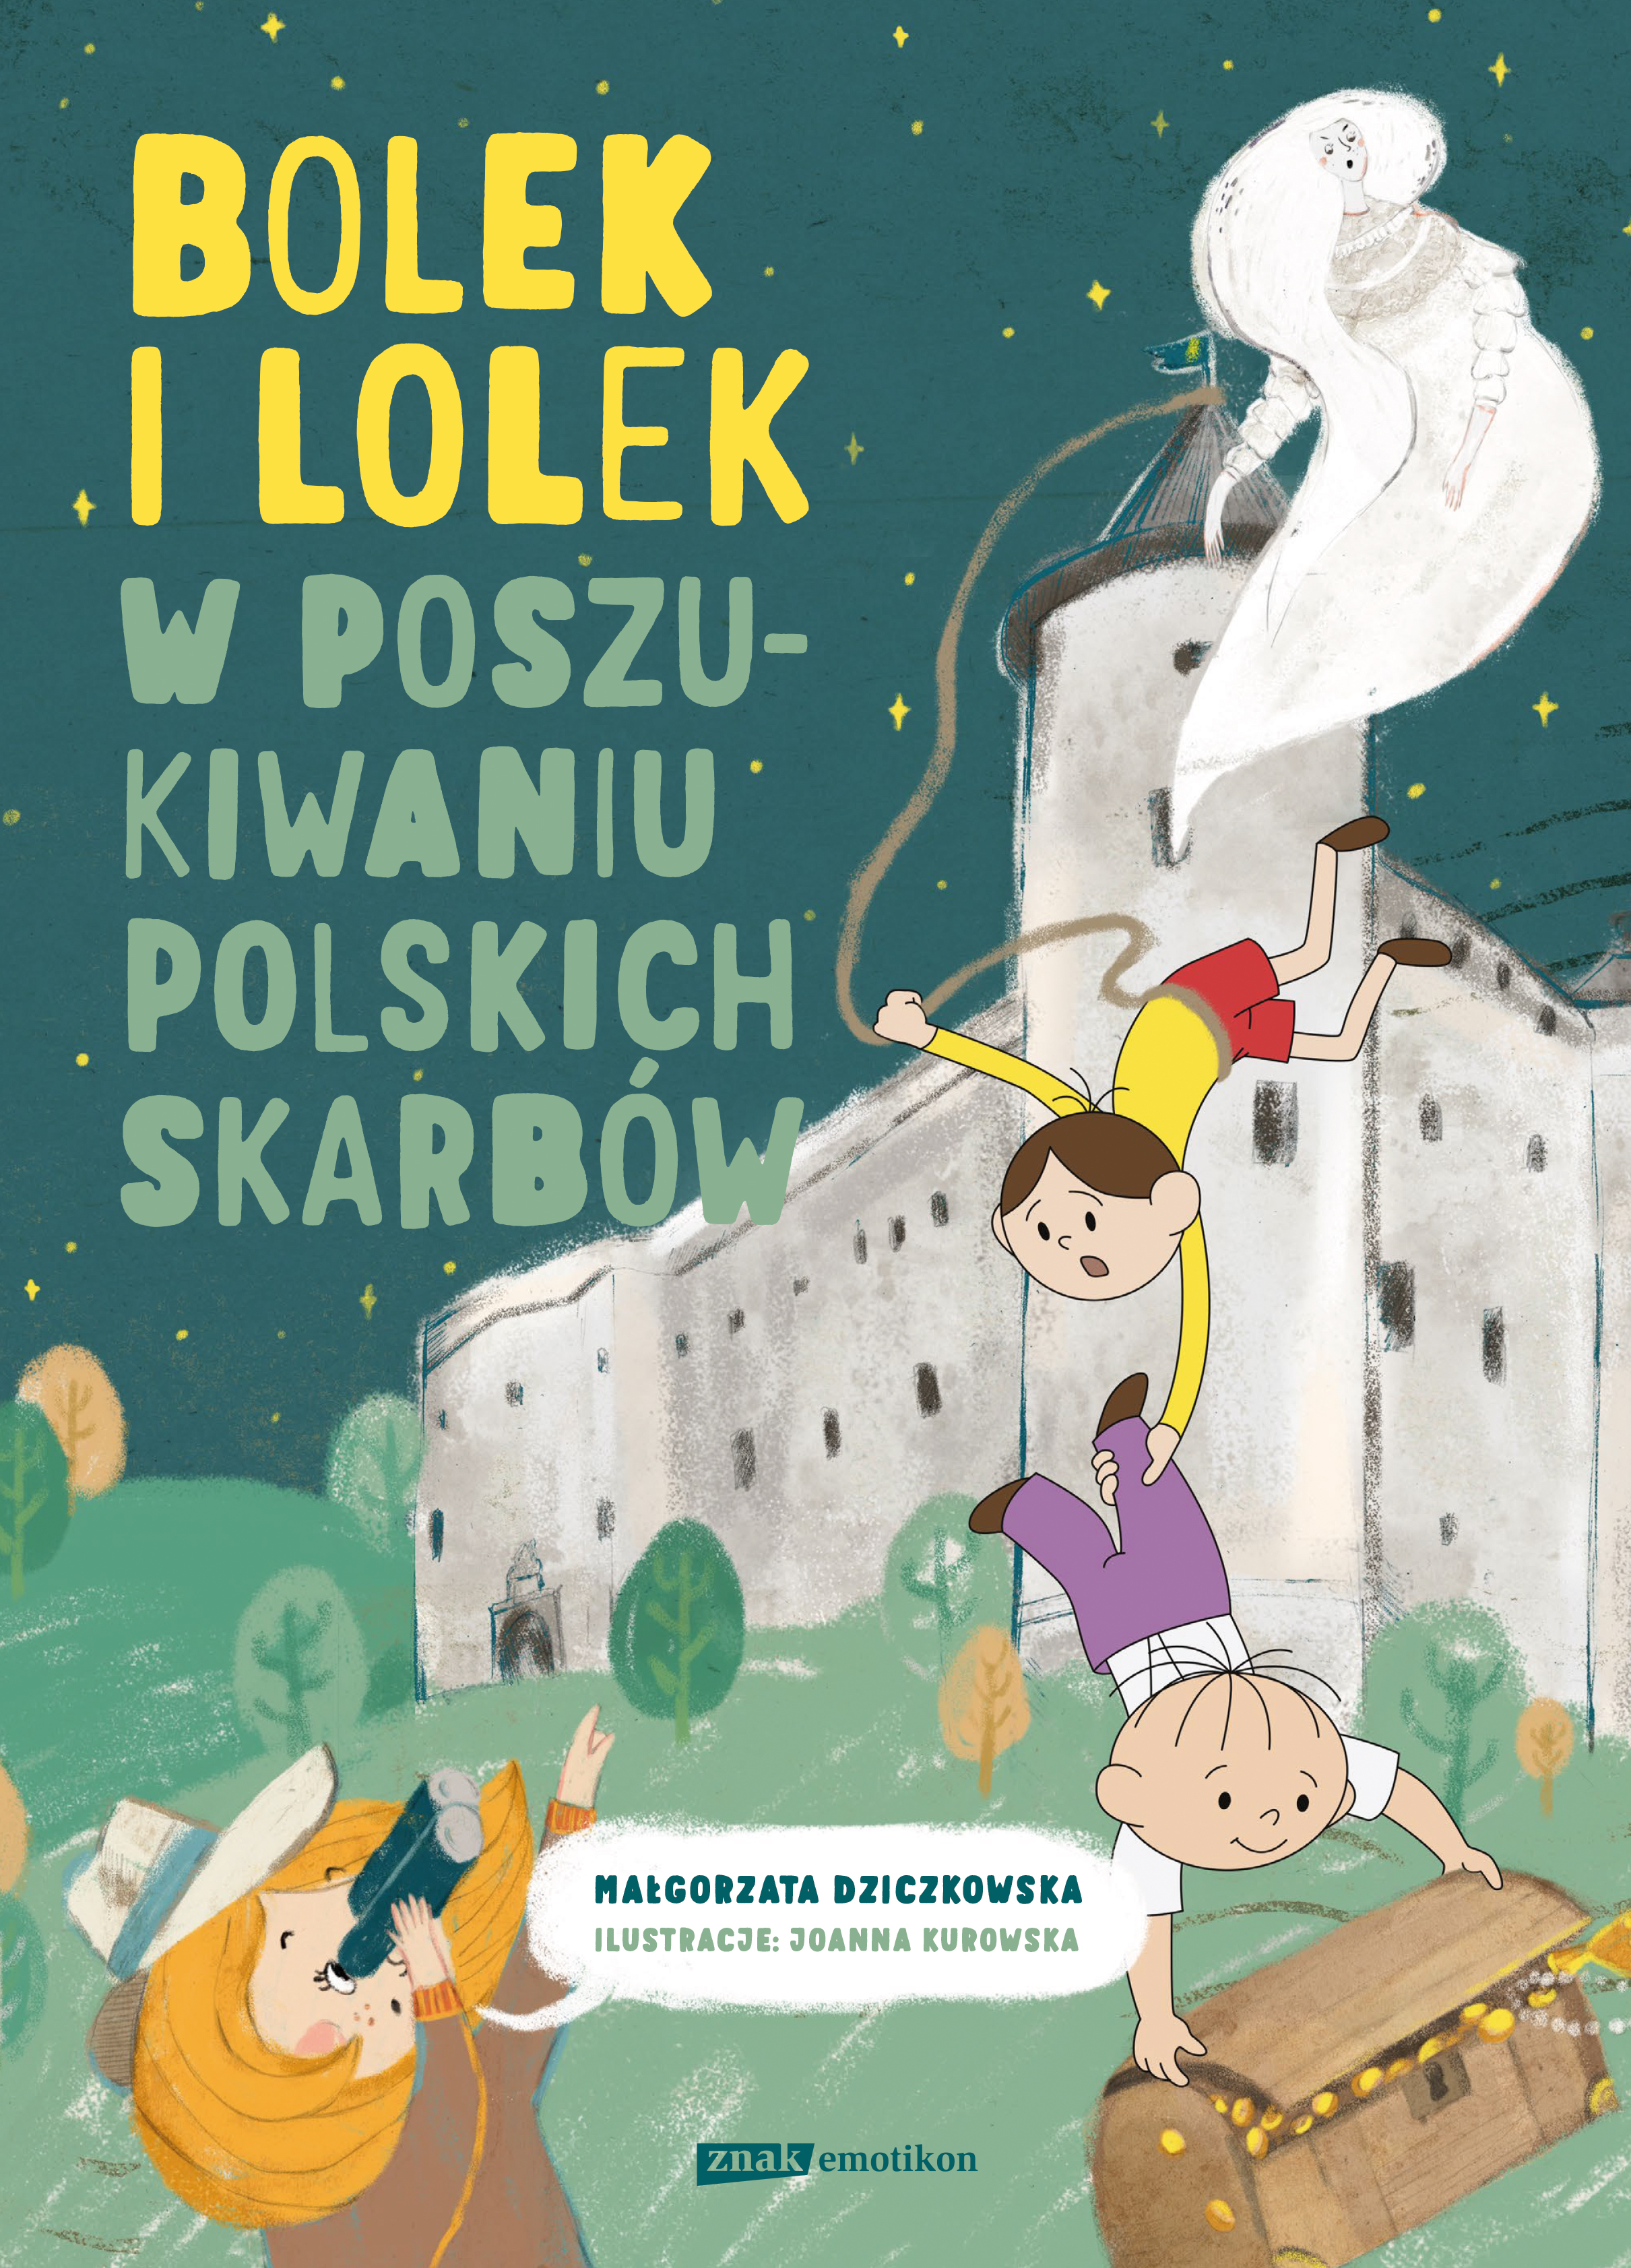 Okładka - Bolek i Lolek. W poszukiwaniu polskich skarbów